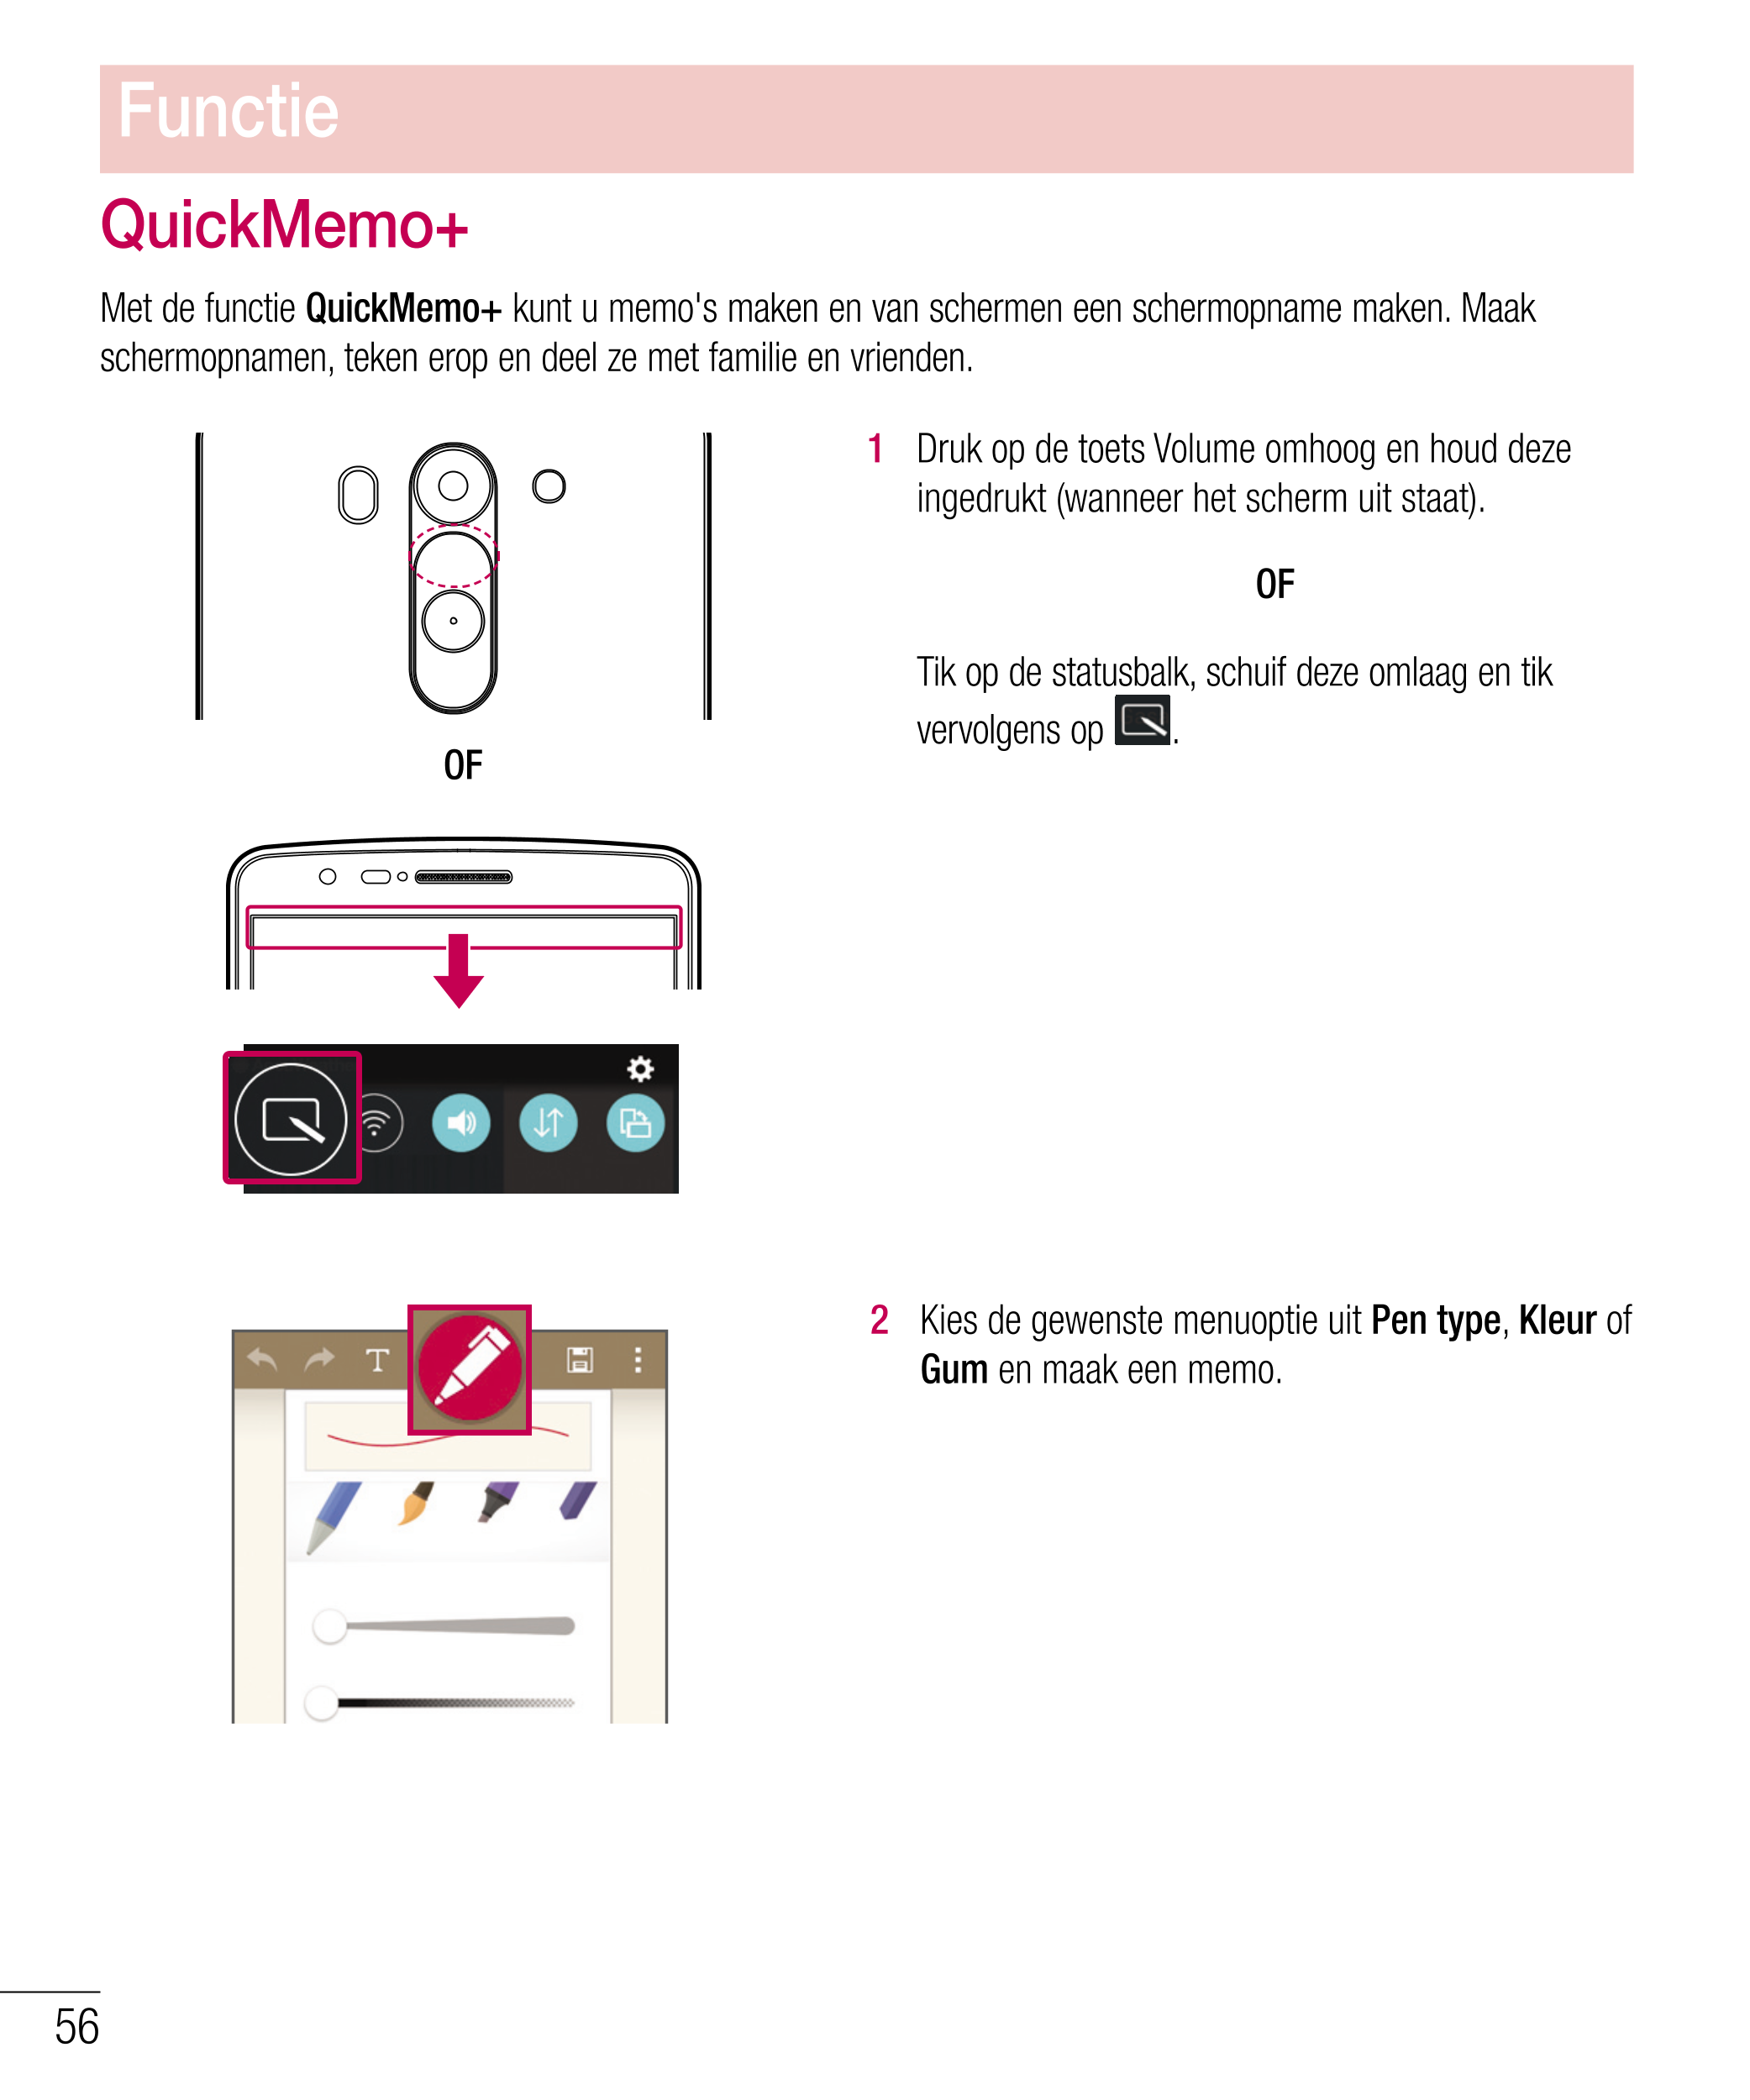 Functie
QuickMemo+
Met de functie  QuickMemo+ kunt u memo's maken en van schermen een schermopname maken. Maak 
schermopnamen, t